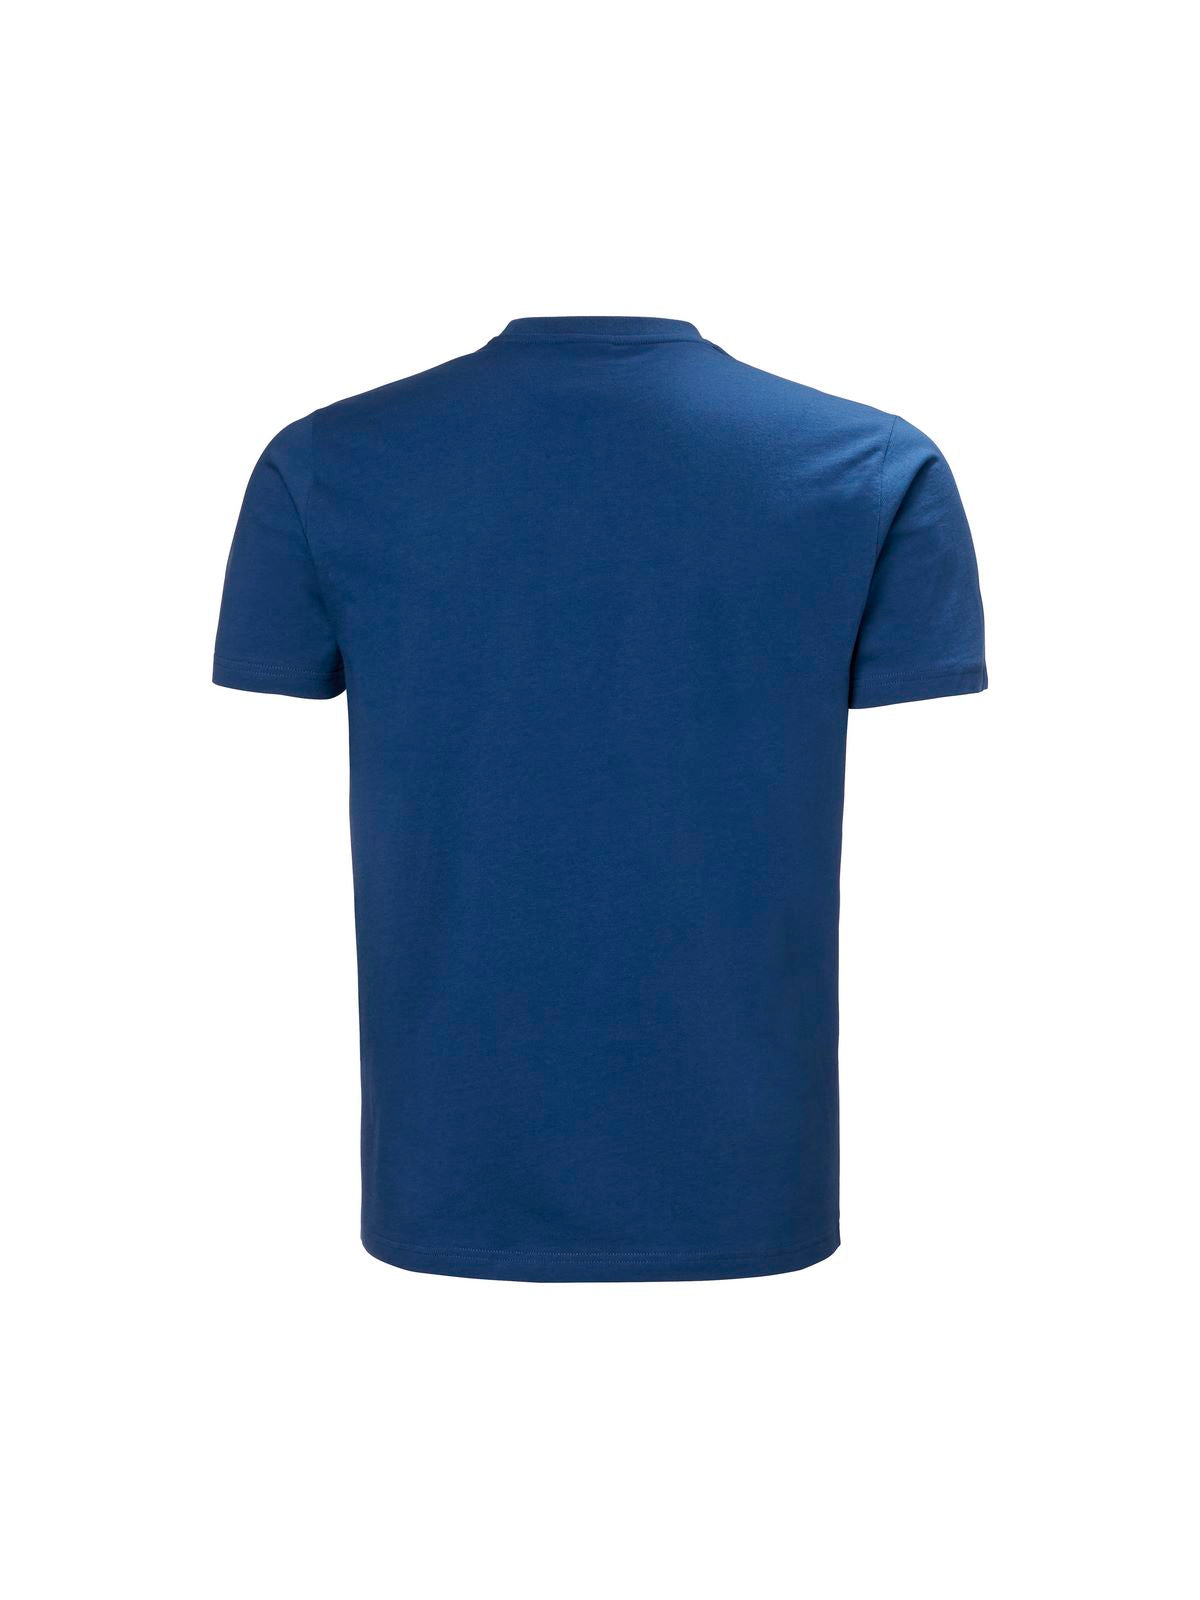 Koszulka Helly Hansen Hh Box T - niebieski